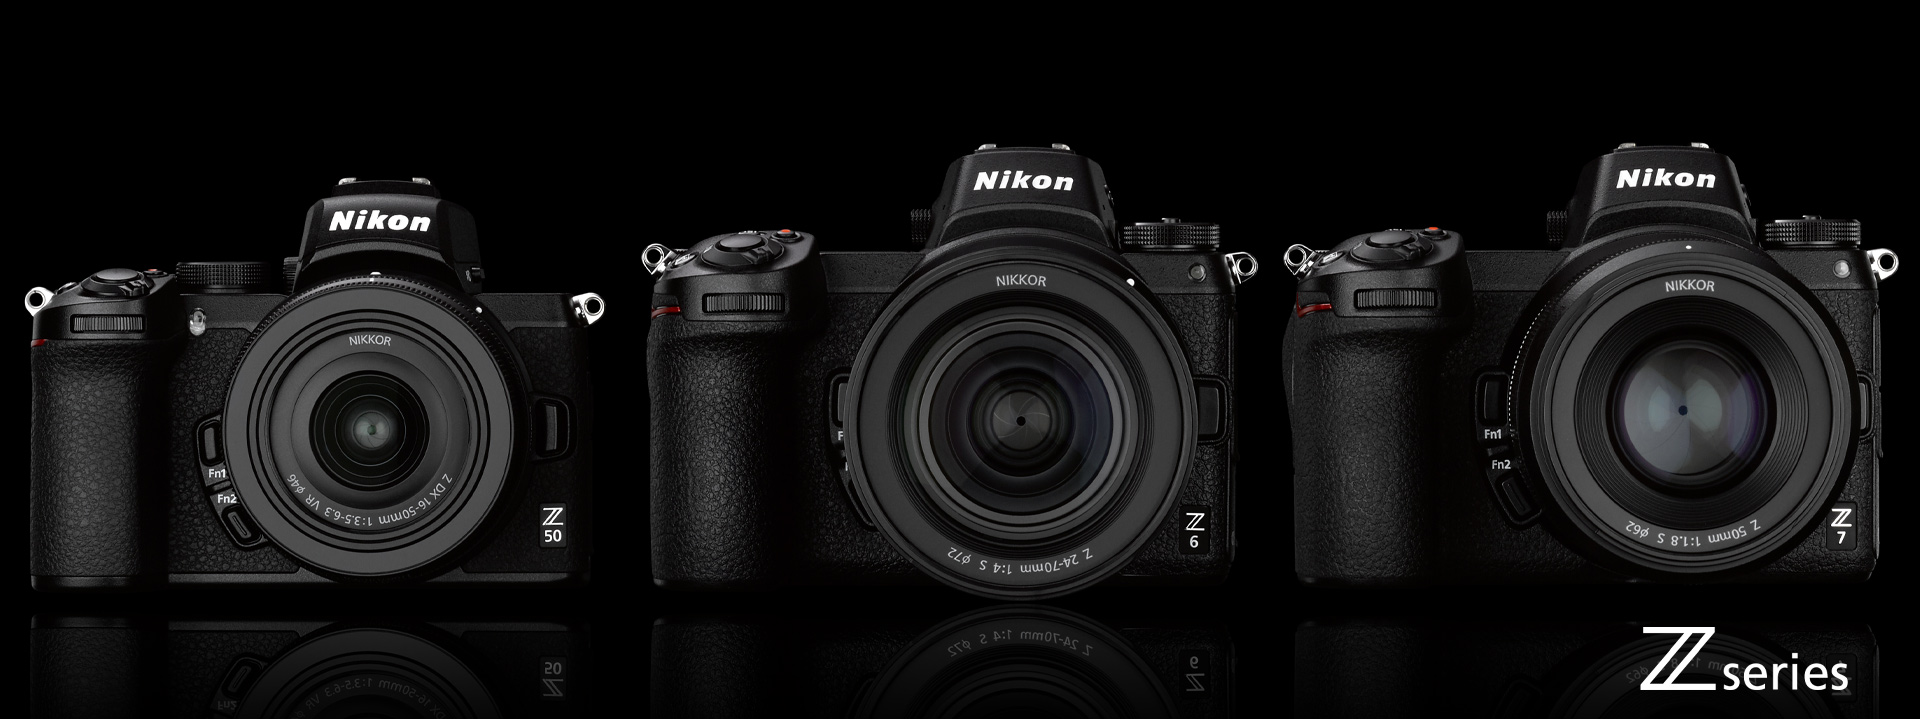 Nikon đang có kế hoạch đẩy nhanh tiến độ lộ trình ống kính cho Nikon Z